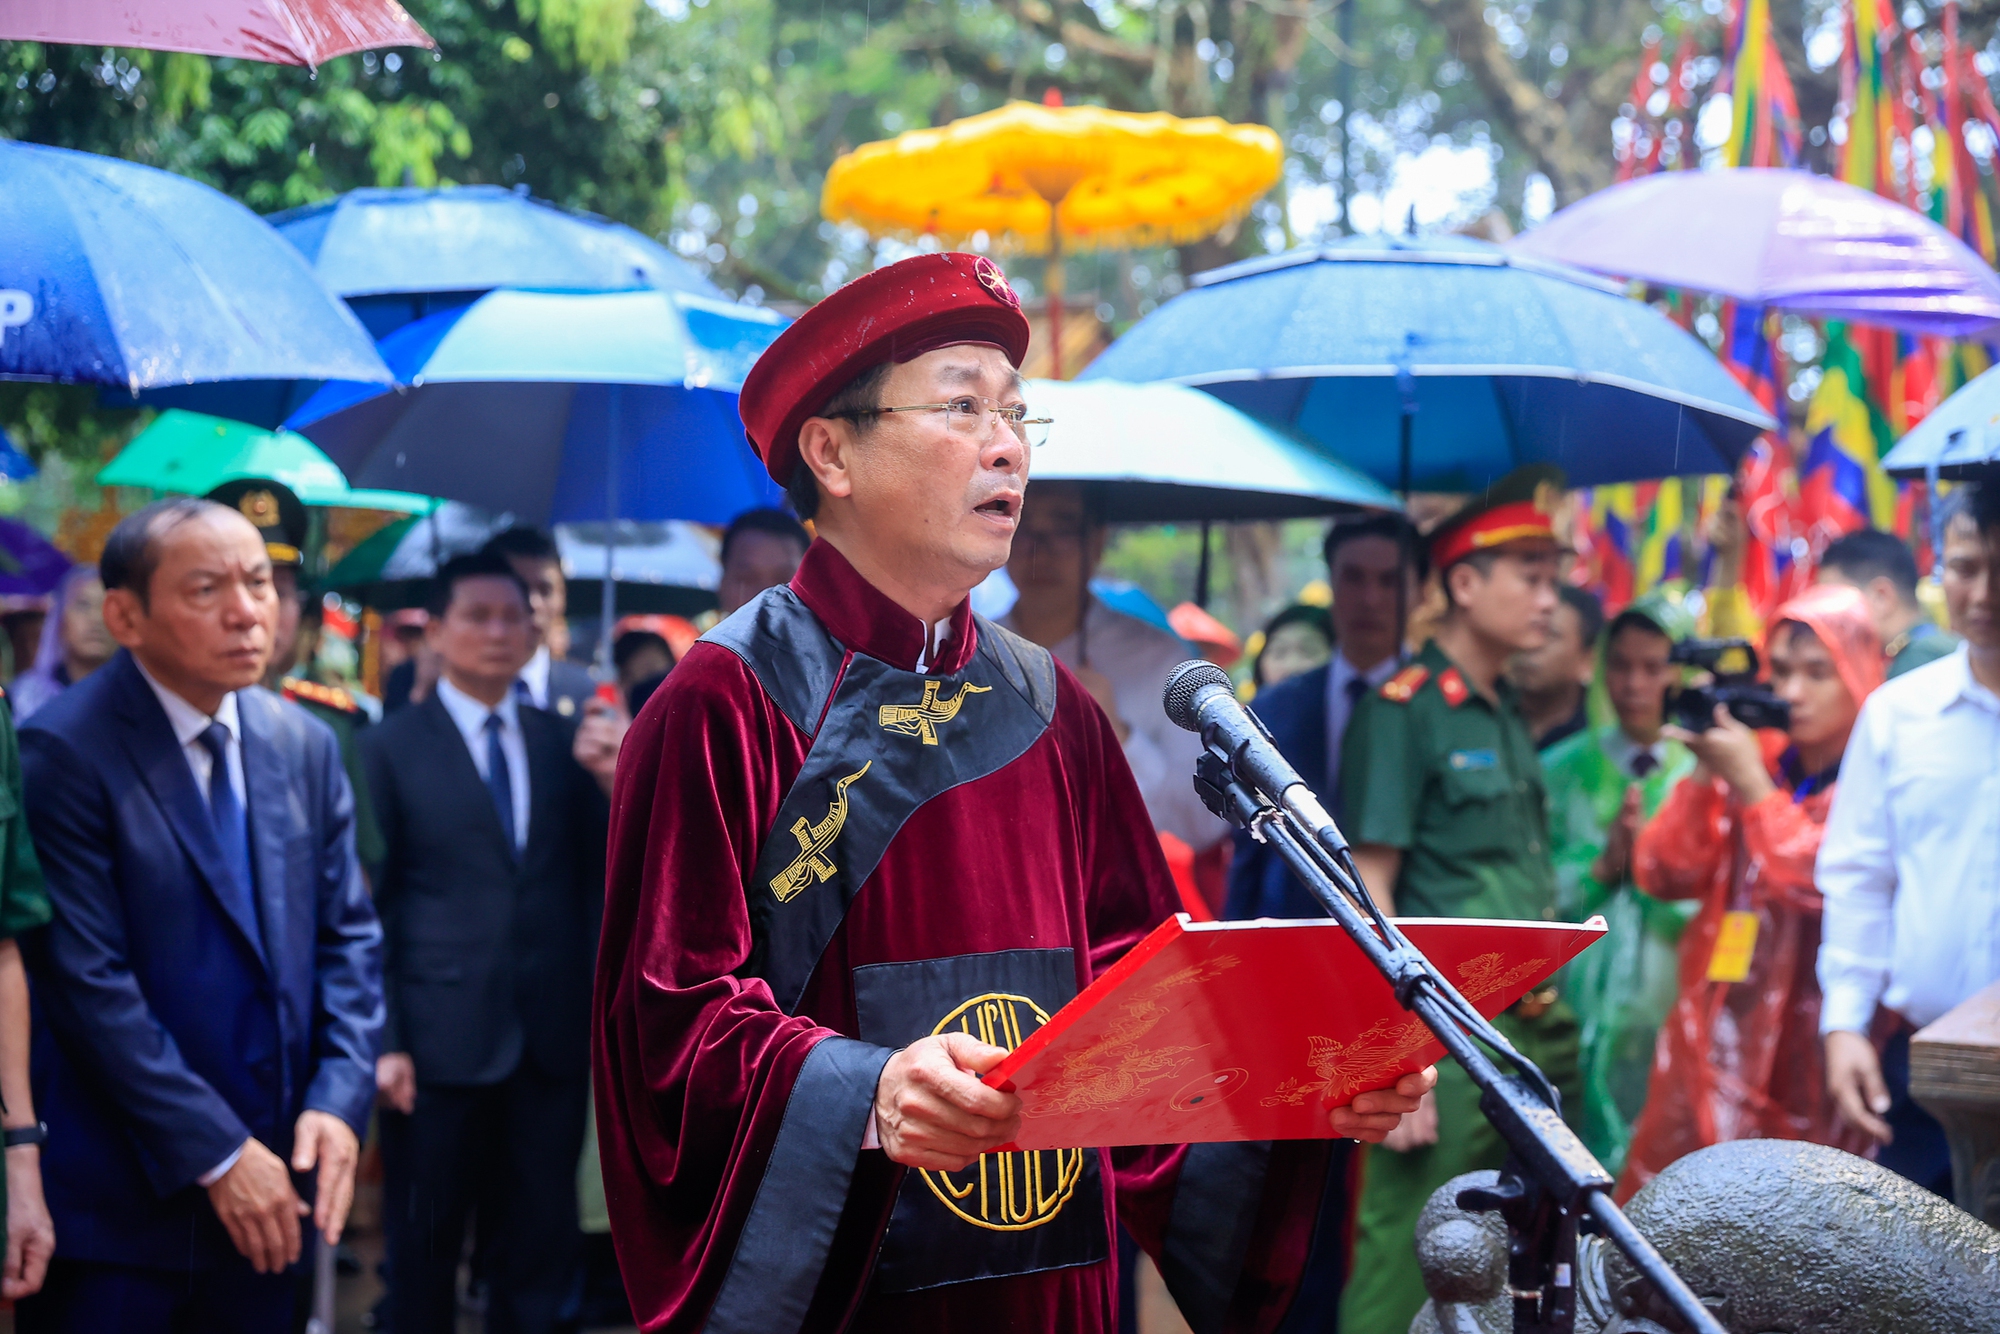 Thủ tướng Phạm Minh Chính dự lễ dâng hương Giỗ Tổ Hùng Vương